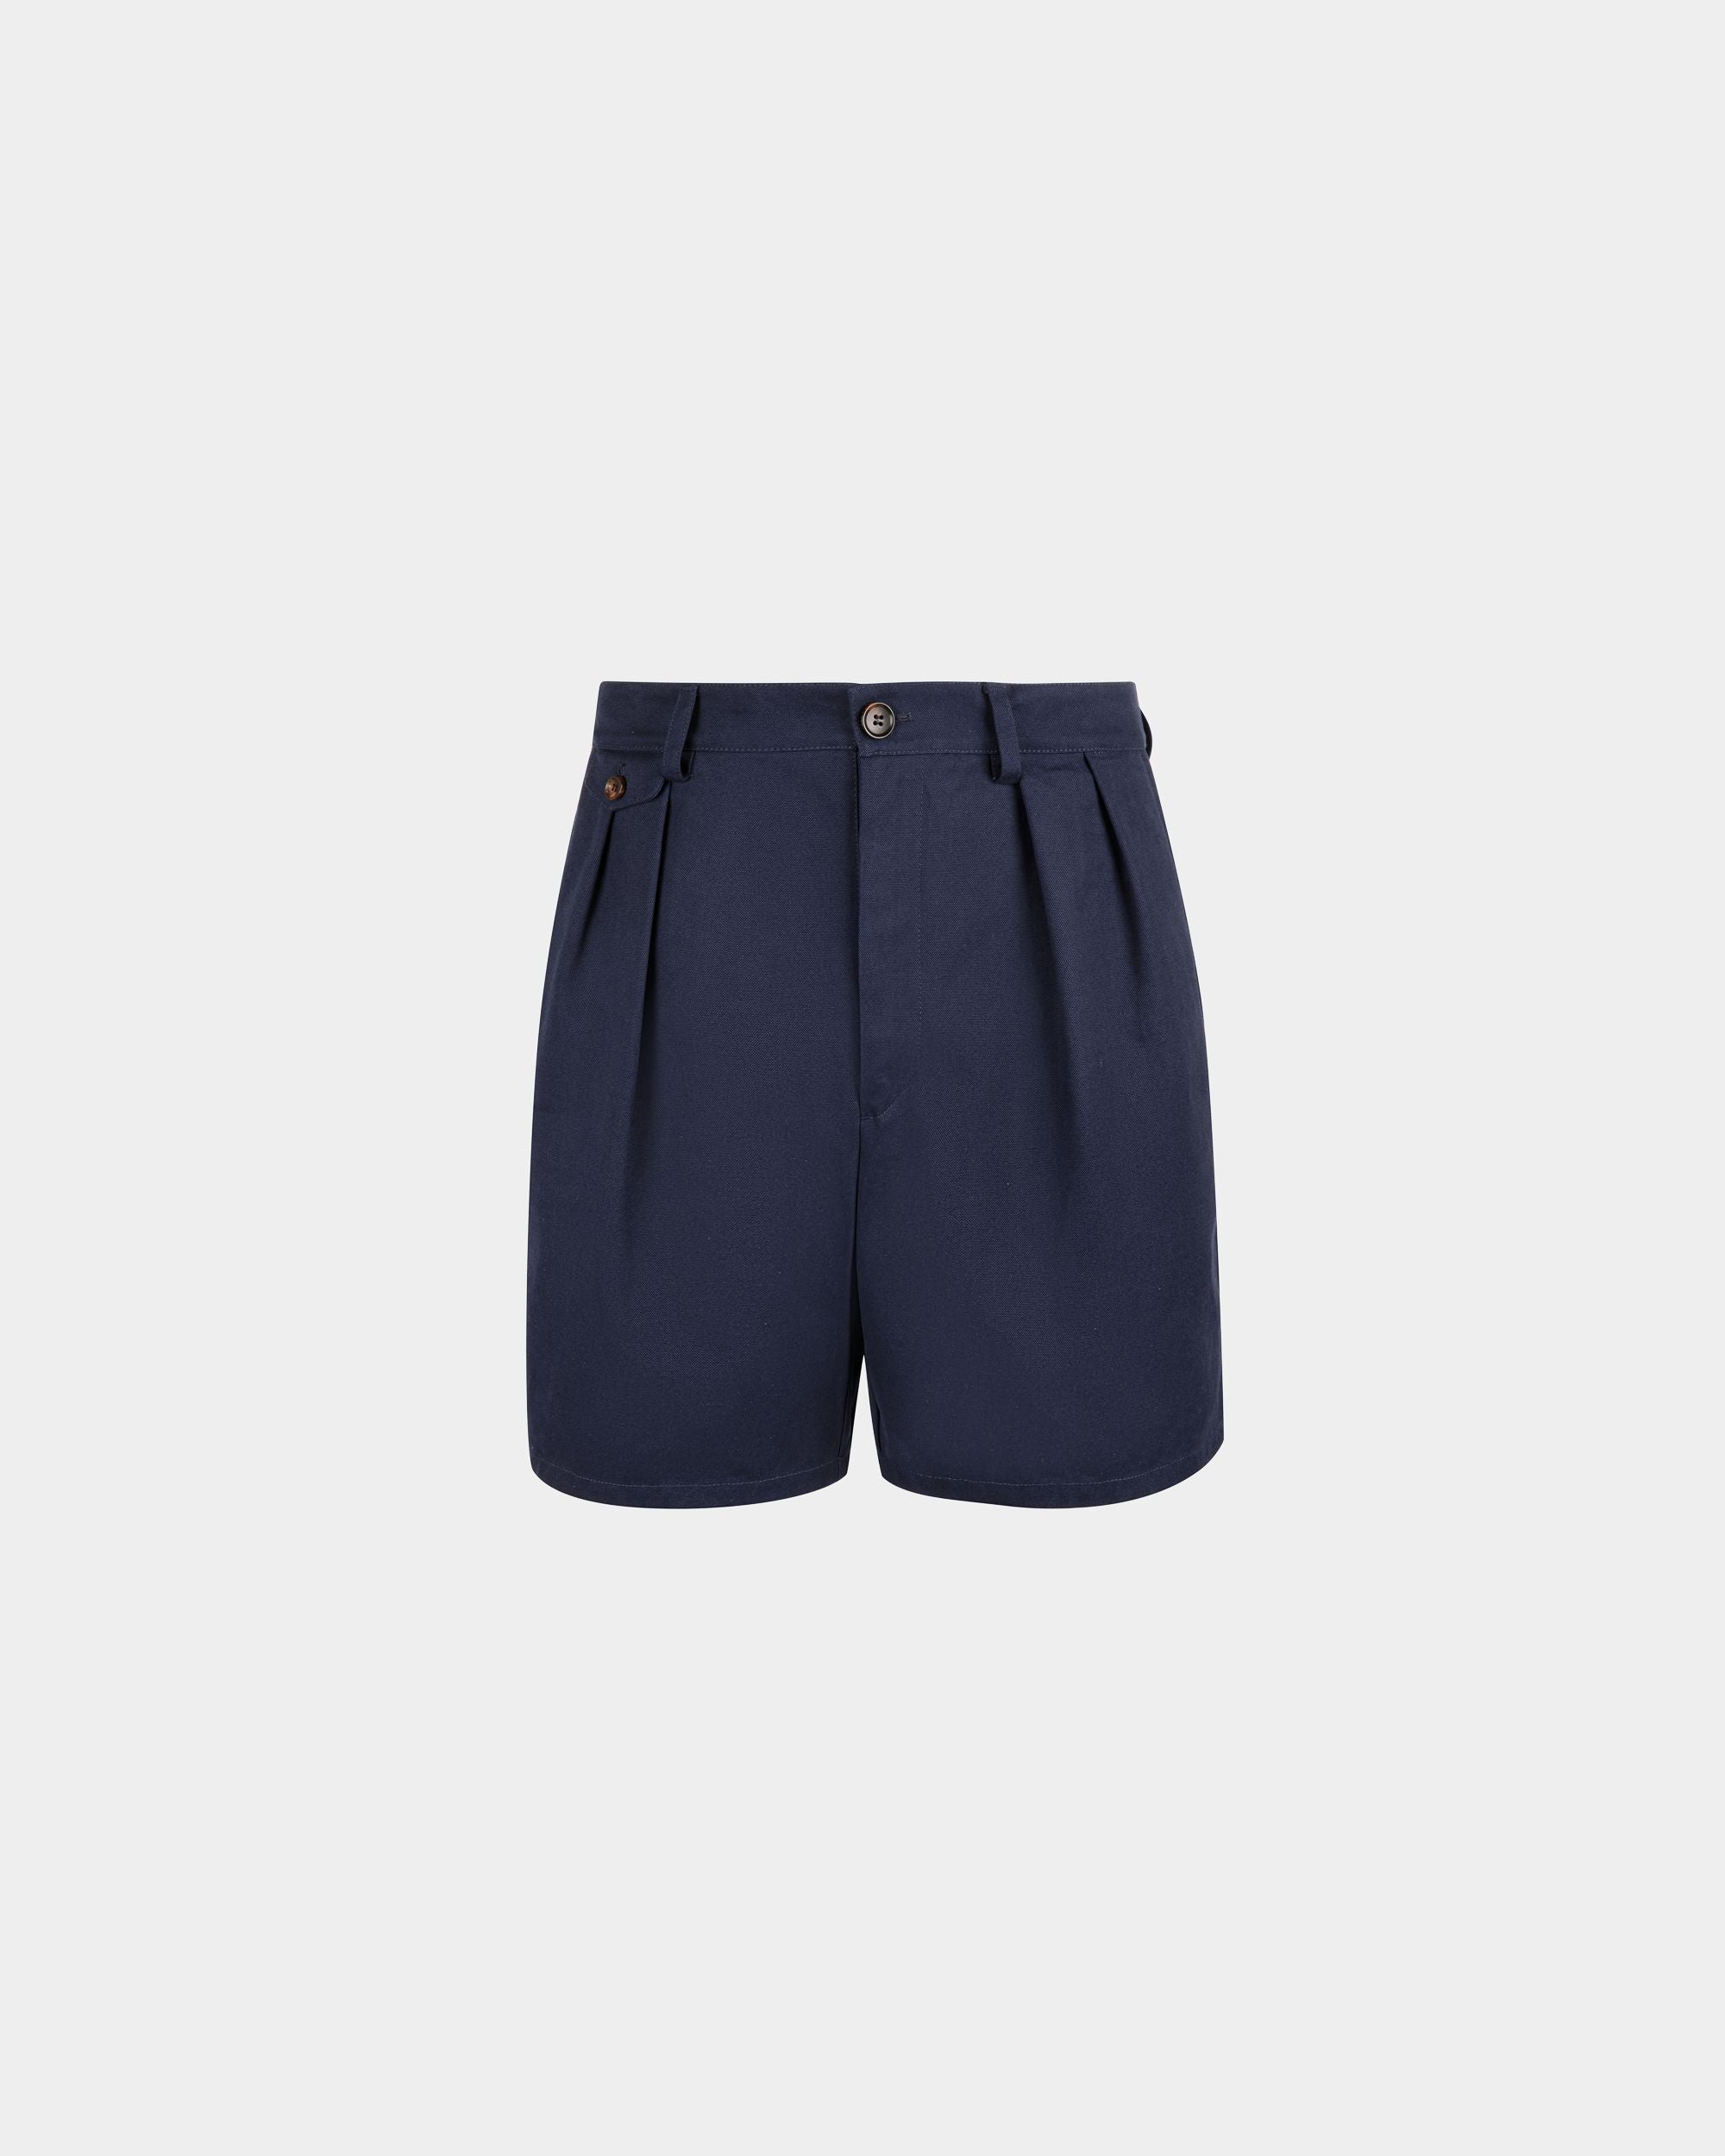 Shorts da uomo in cotone blu navy | Bally | Still Life Fronte